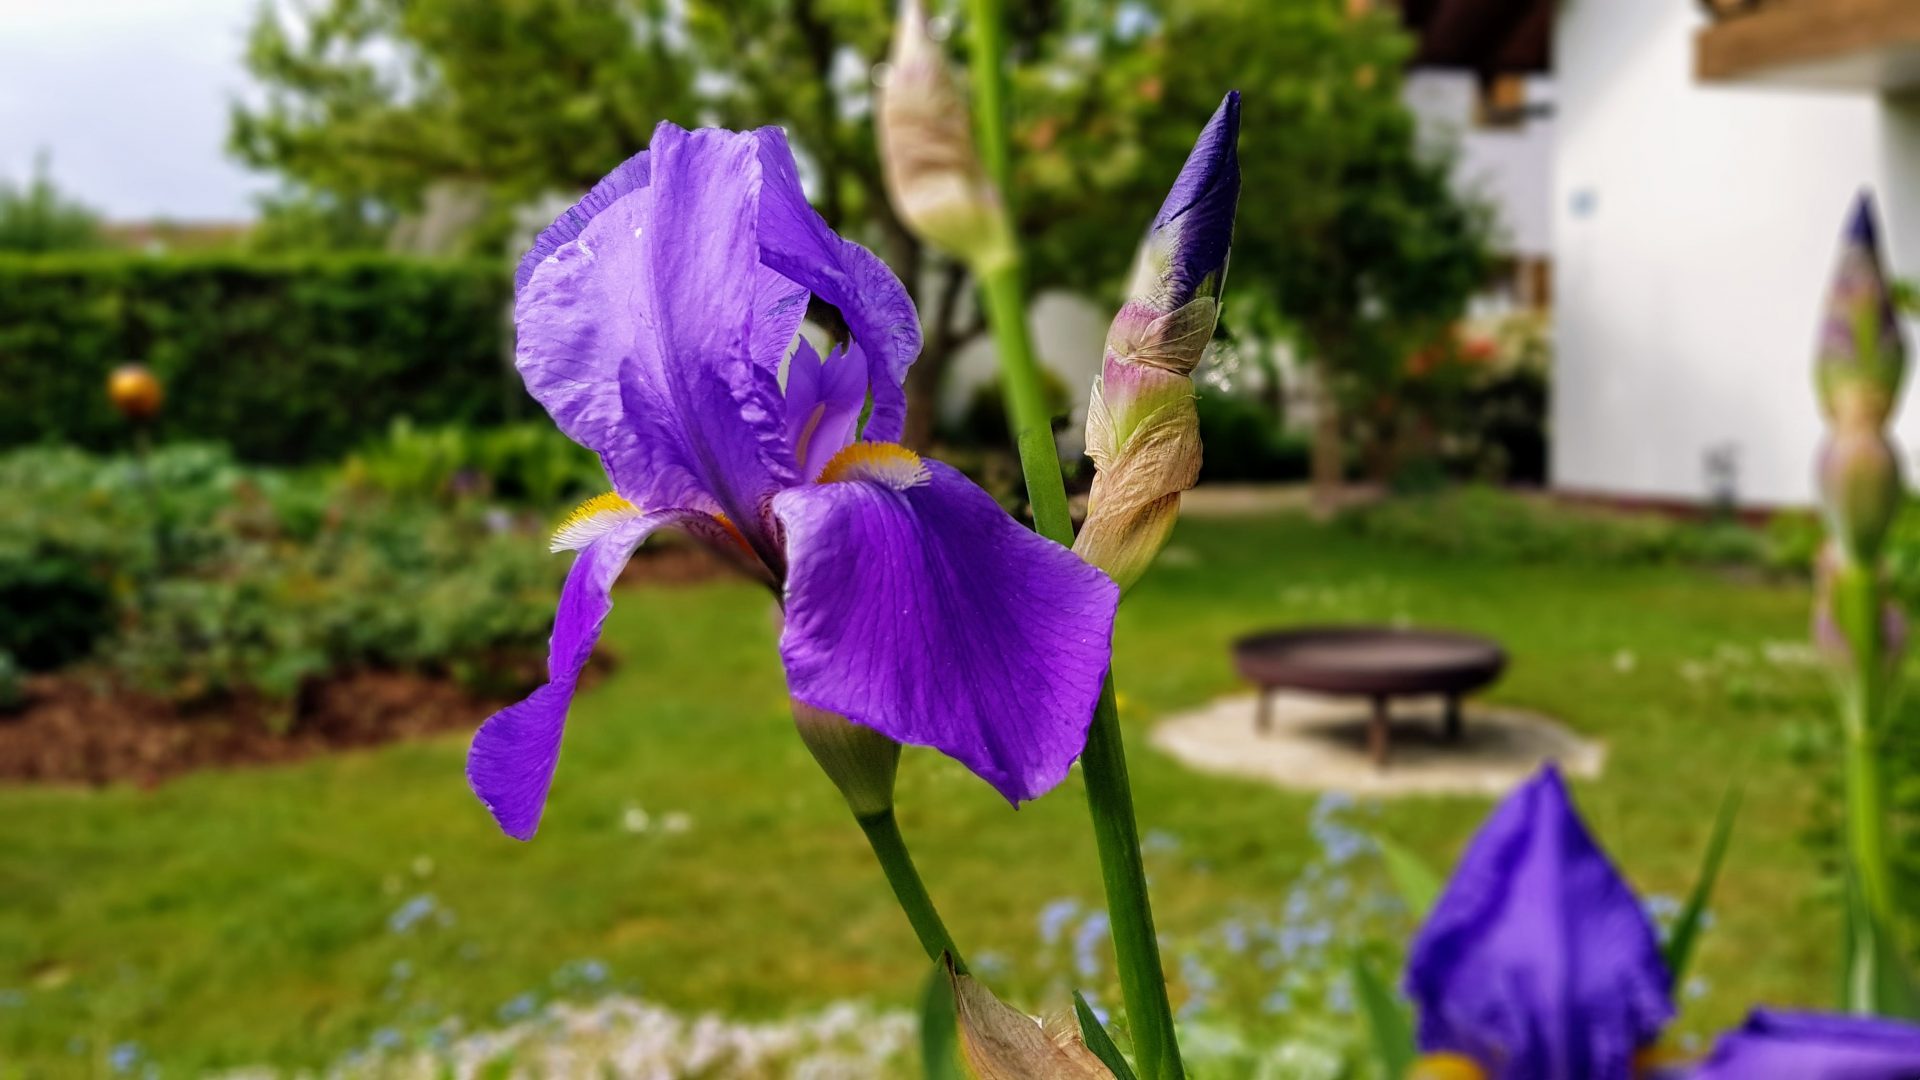 Blaue Iris